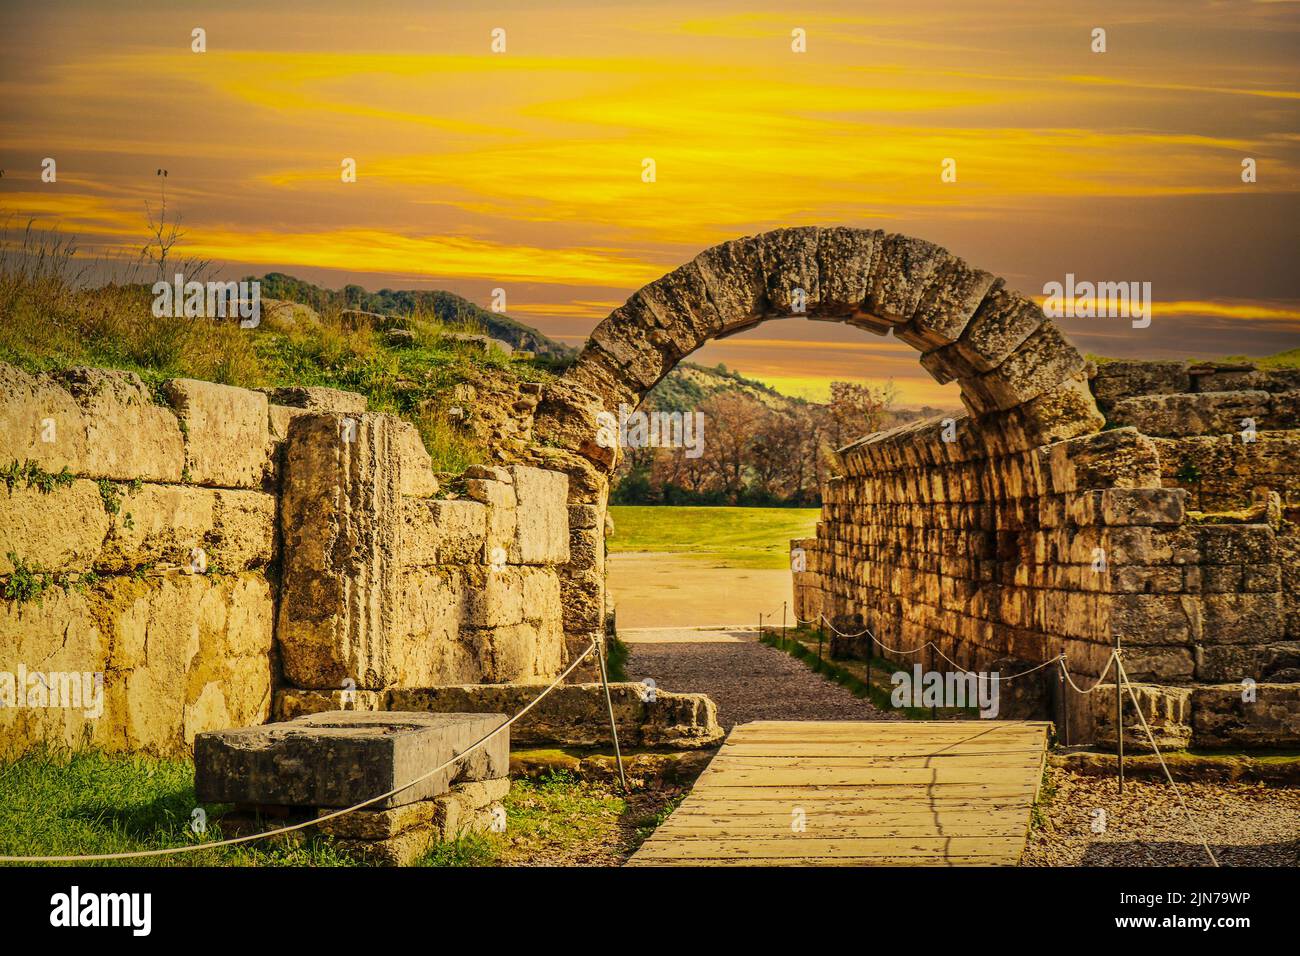 Ingresso stadio - muri in pietra e arco che entrano nel campo dove i primi giochi di Pah Hellenic si sono svolte a Olympia Grecia al tramonto. Foto Stock